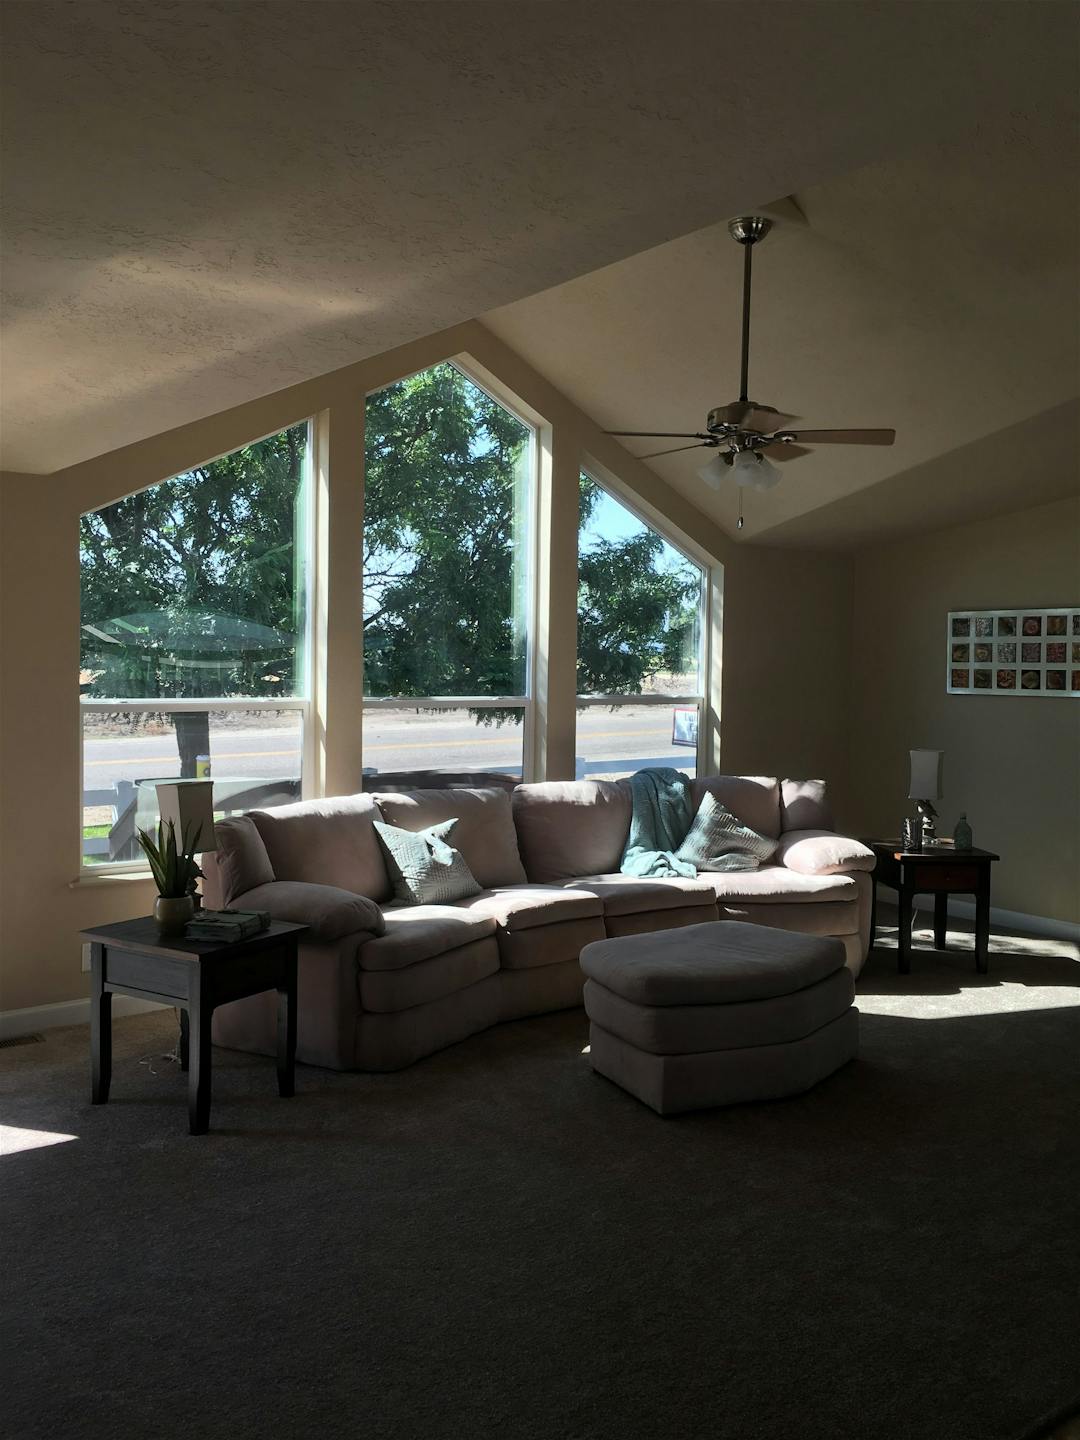 Pinehurst interior home features